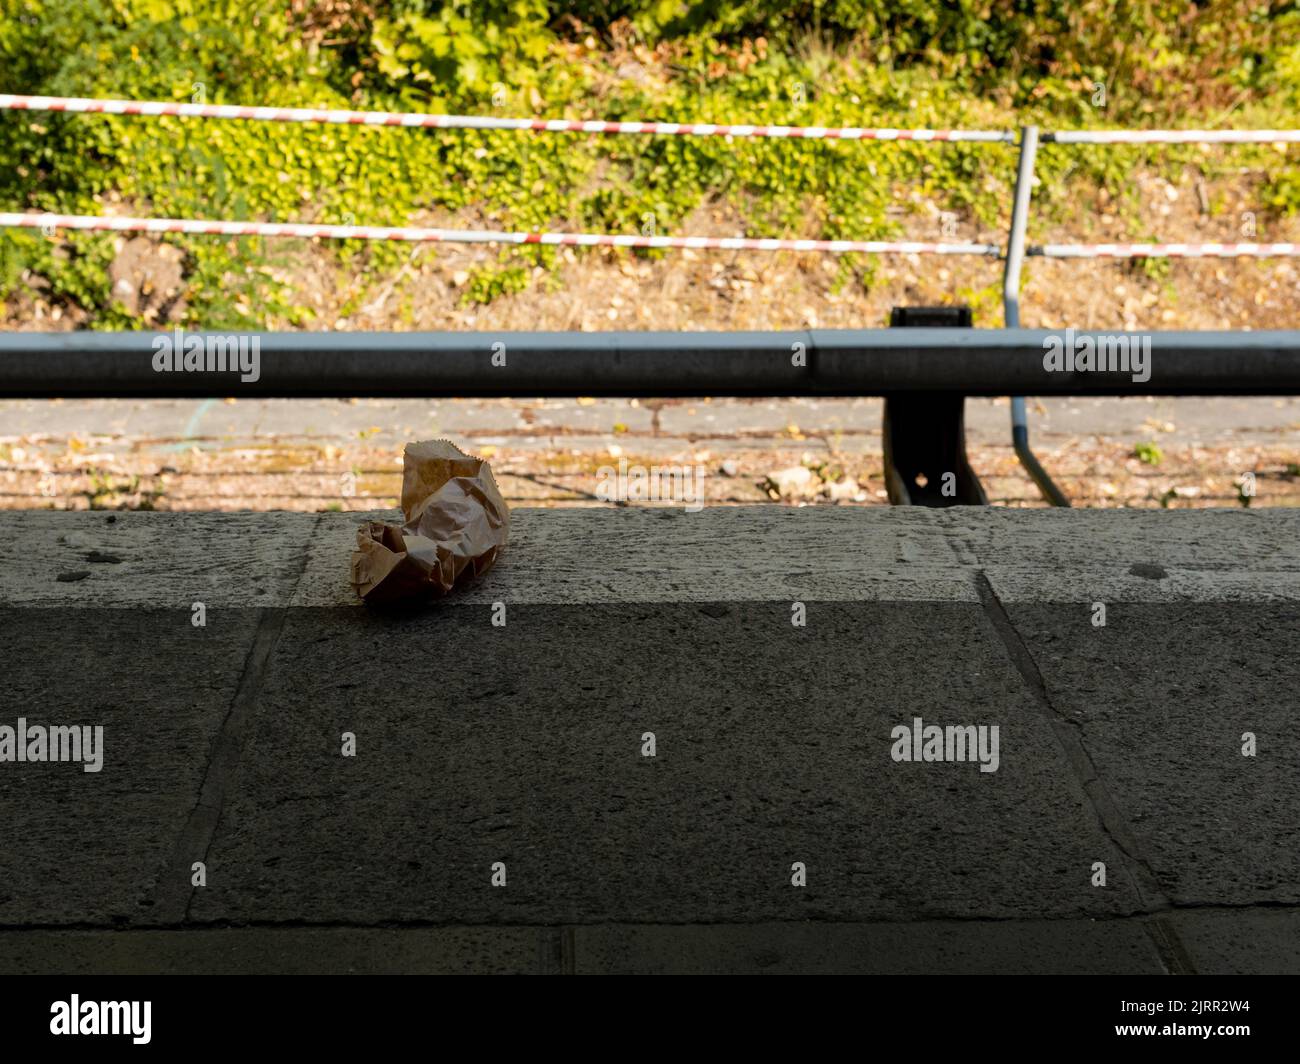 Abfall auf einem Bahnsteig in der Stadt. Müll liegt auf dem Boden. Ein dreckiger Ort an den öffentlichen Verkehrsmitteln. Papiermüll weggeworfen. Stockfoto